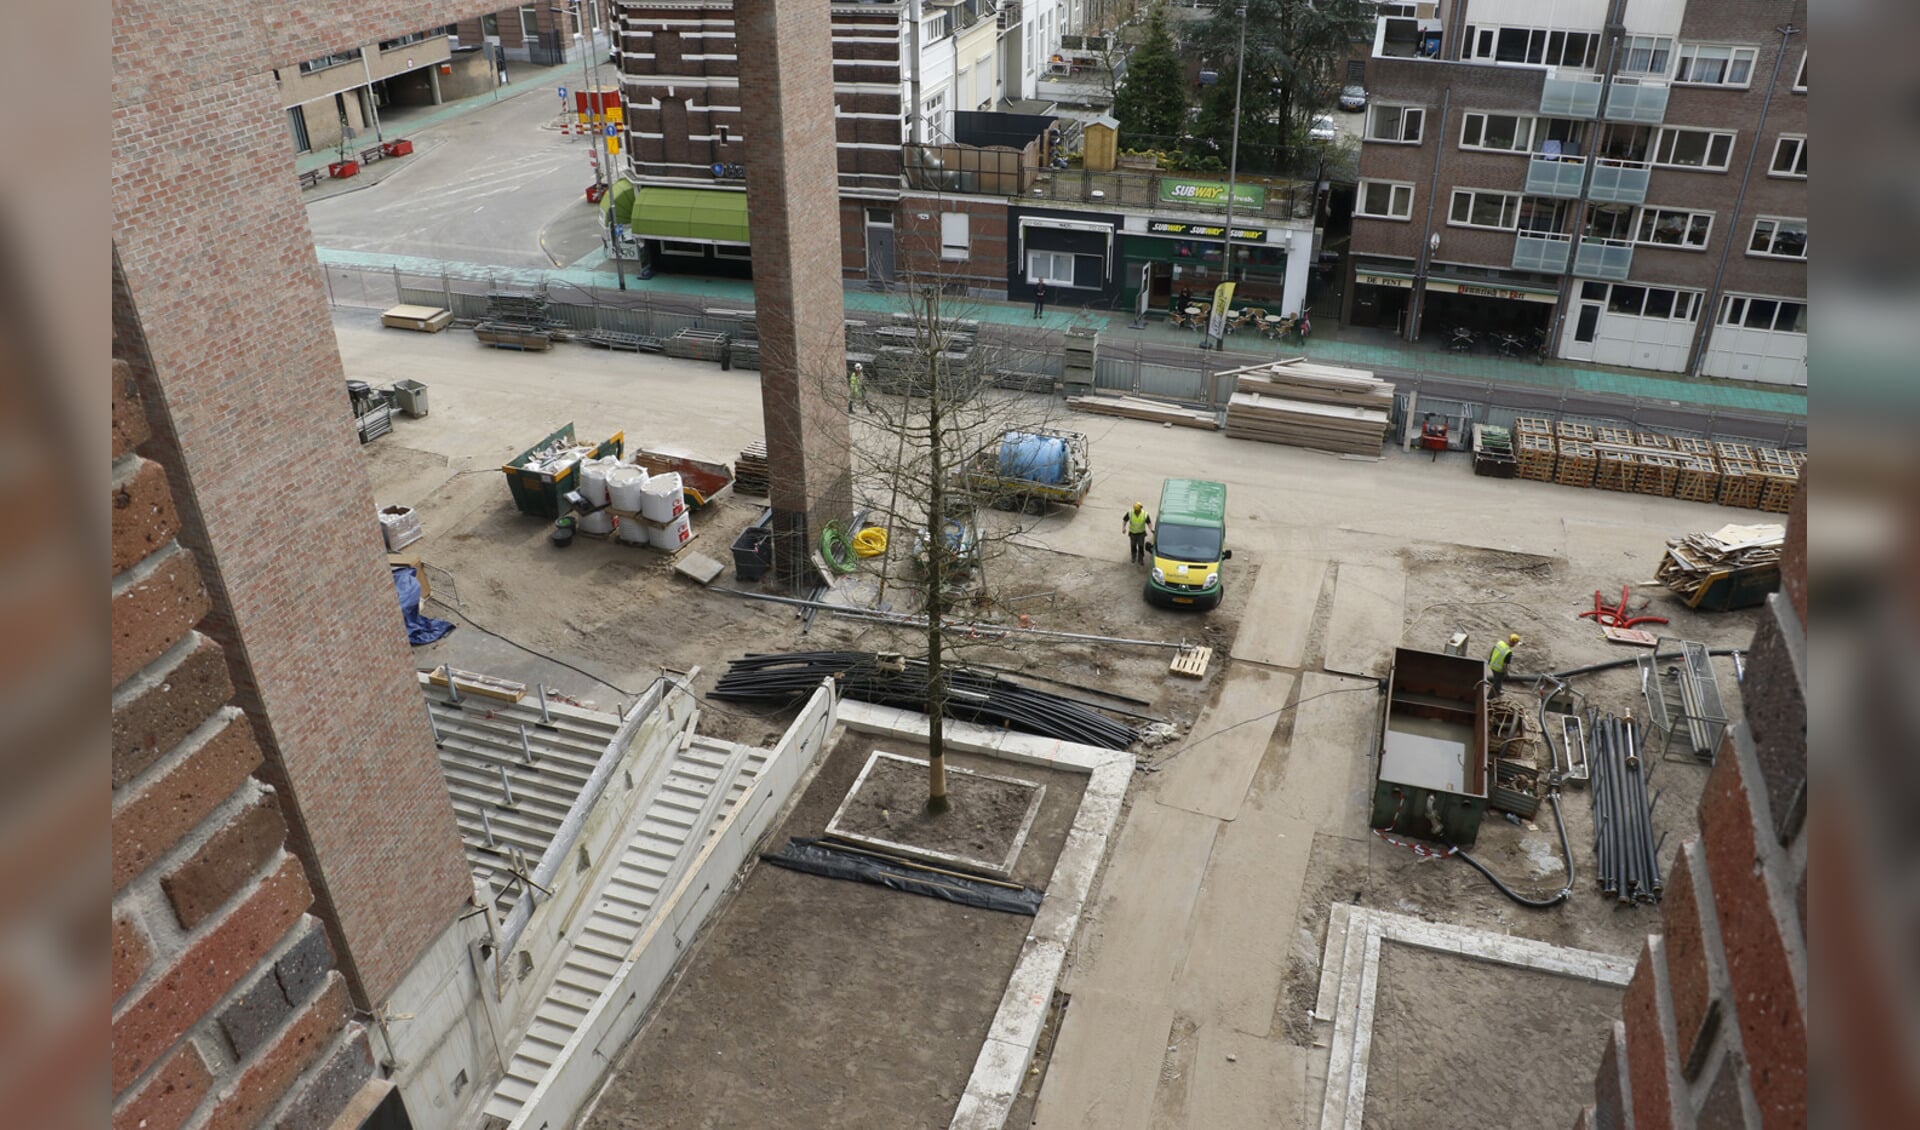 Station Breda, 13 april 2016. Een kleine vijf maanden voor de officiële opening.